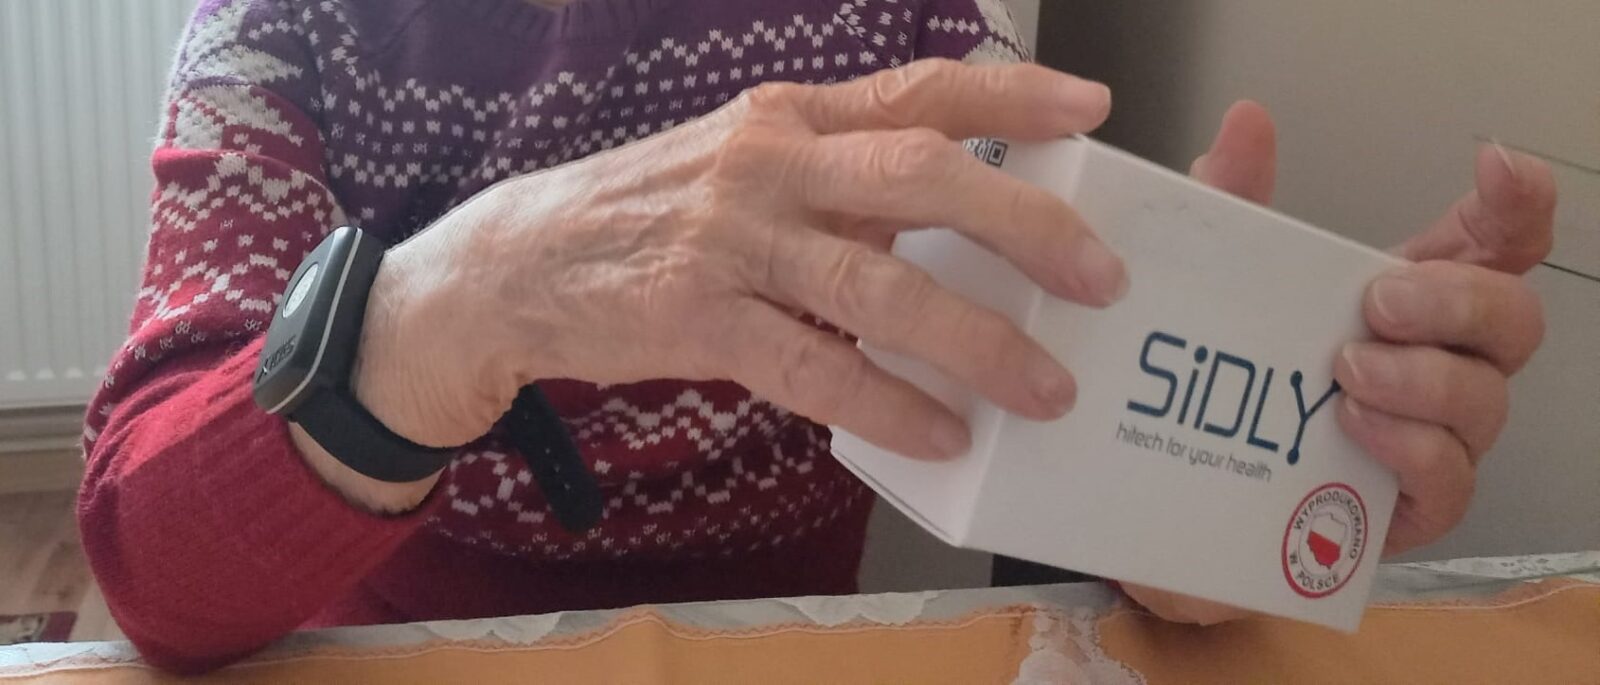 20220405 opaski 2022: Na zdjęciu widać seniora, który ma na ręce opaskę telemedyczną, a w dłoniach trzyma opakowanie od urządzenia producenta opaski telemedycznej firmy SIDLY